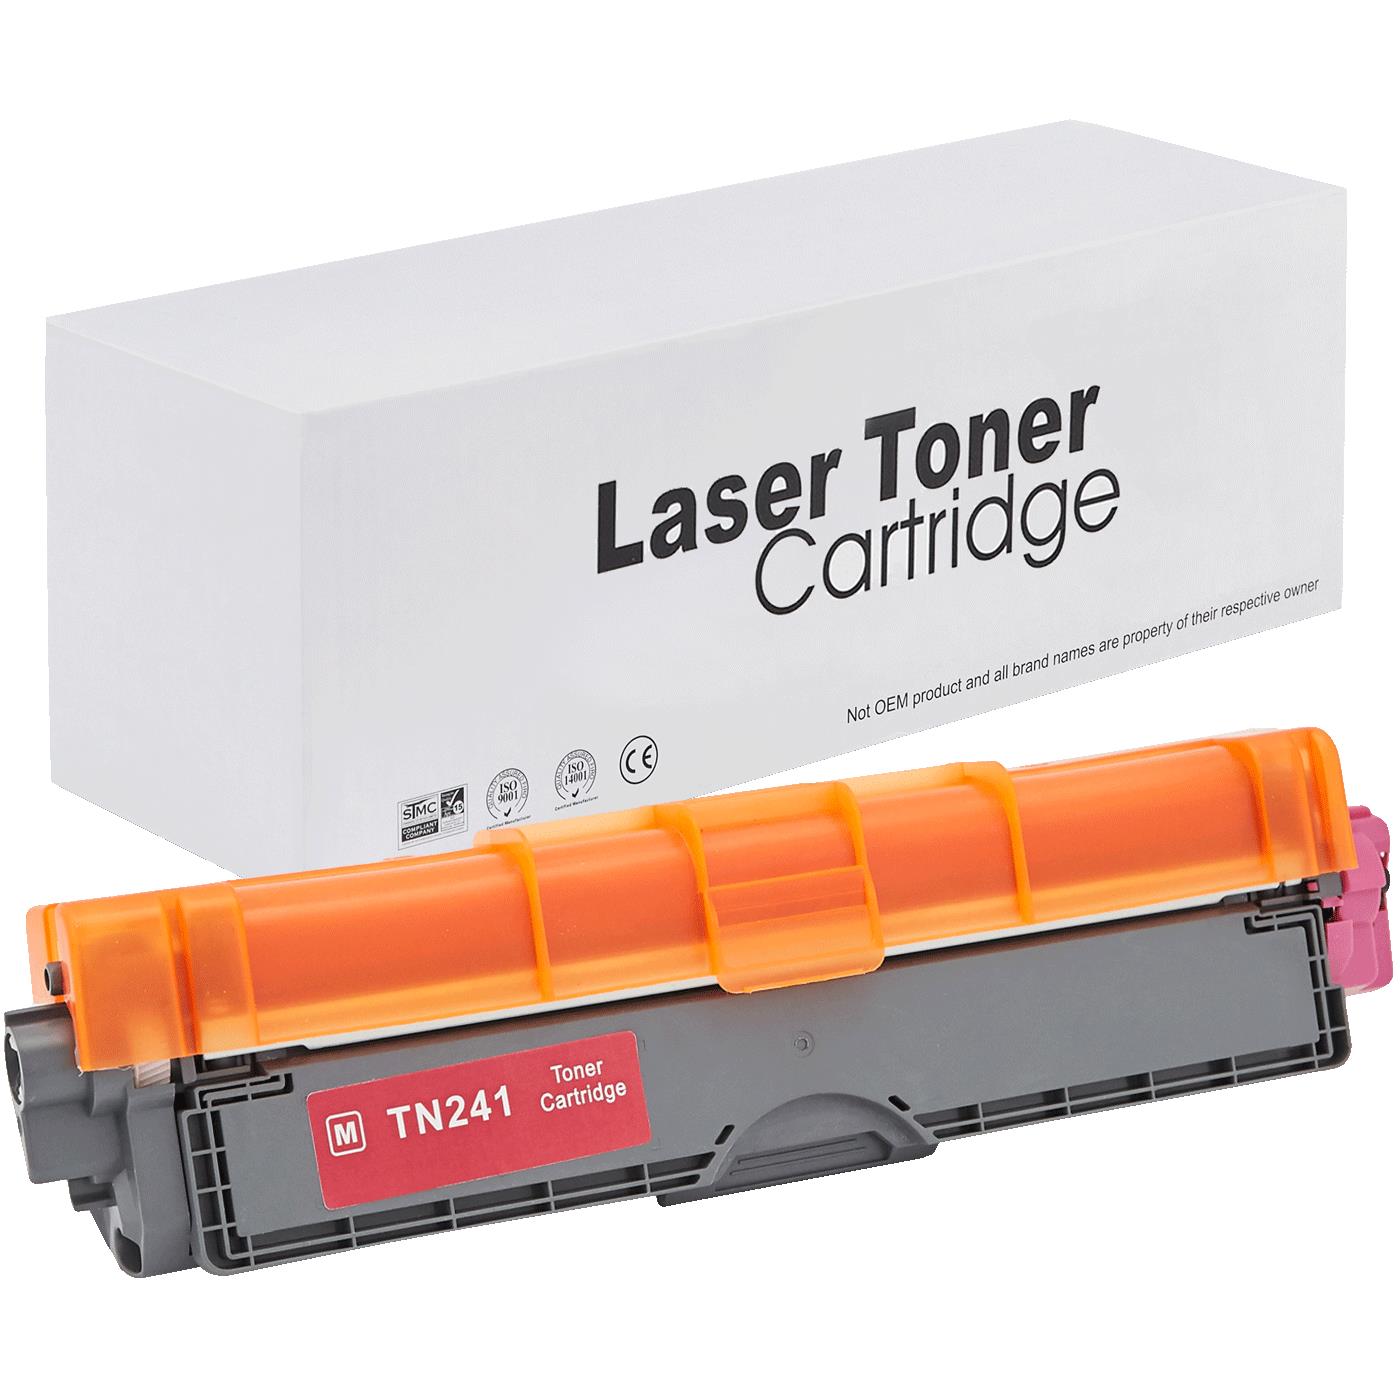 съвместима тонер касета за принтери и печатащи устройства на Brother MFC-9340 CDW Toner BR-241M | TN241M. Ниски цени, прецизно изпълнение, високо качество.